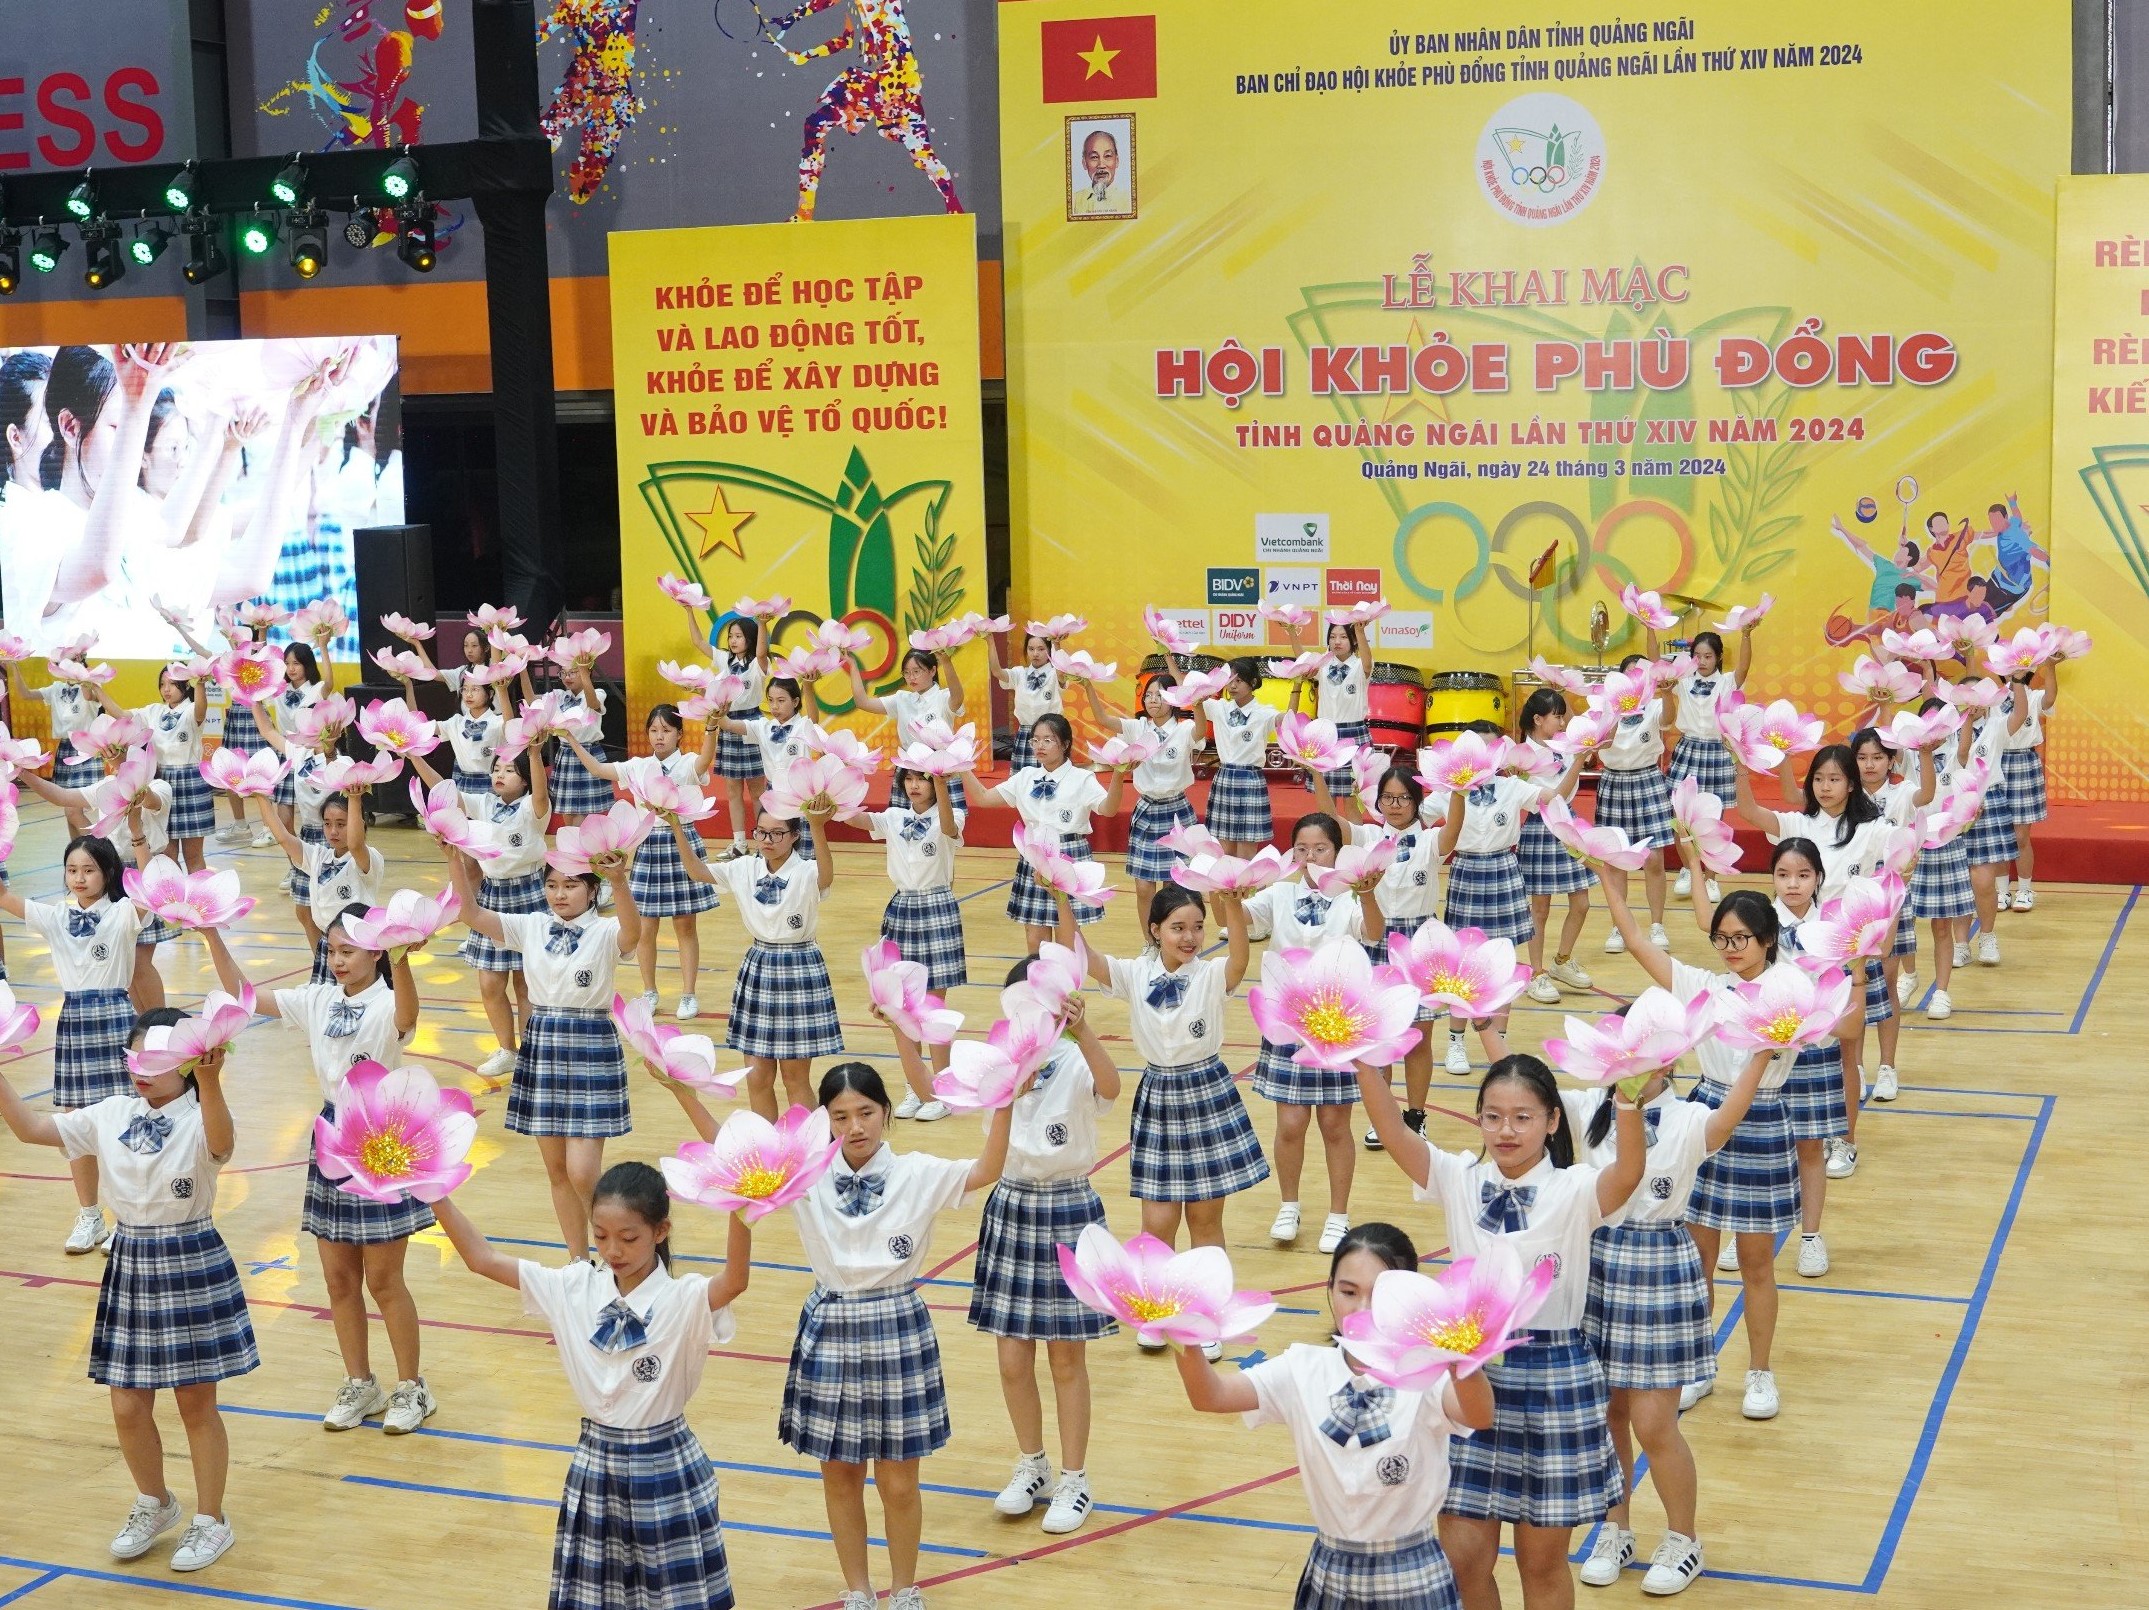 Hội khỏe Phù Đổng tỉnh Quảng Ngãi lần thứ XIV năm 2024 có 53 đoàn, với hơn 4.000 vận động viên tham gia thi đấu 15 bộ môn(1)